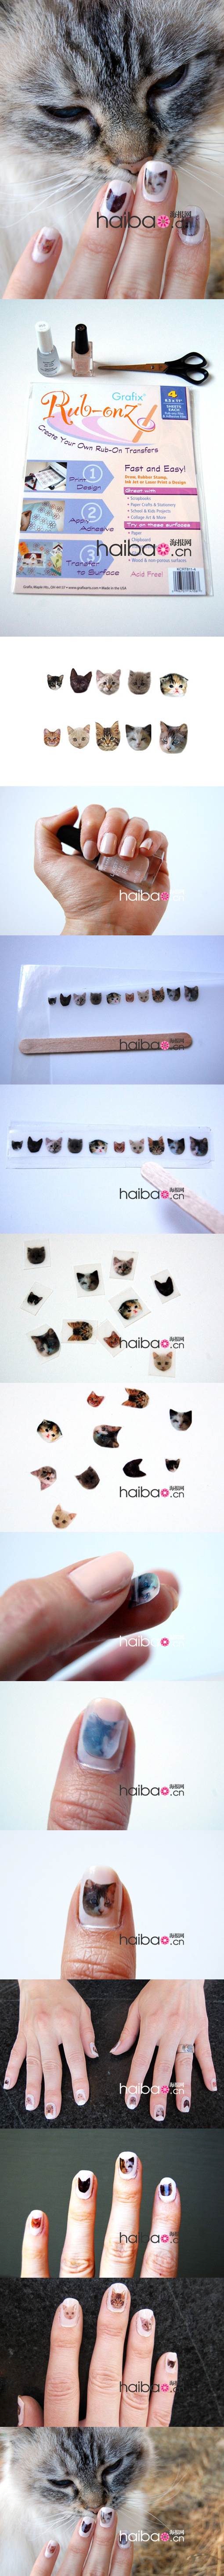 DIY Cat Themed Nail Art 2